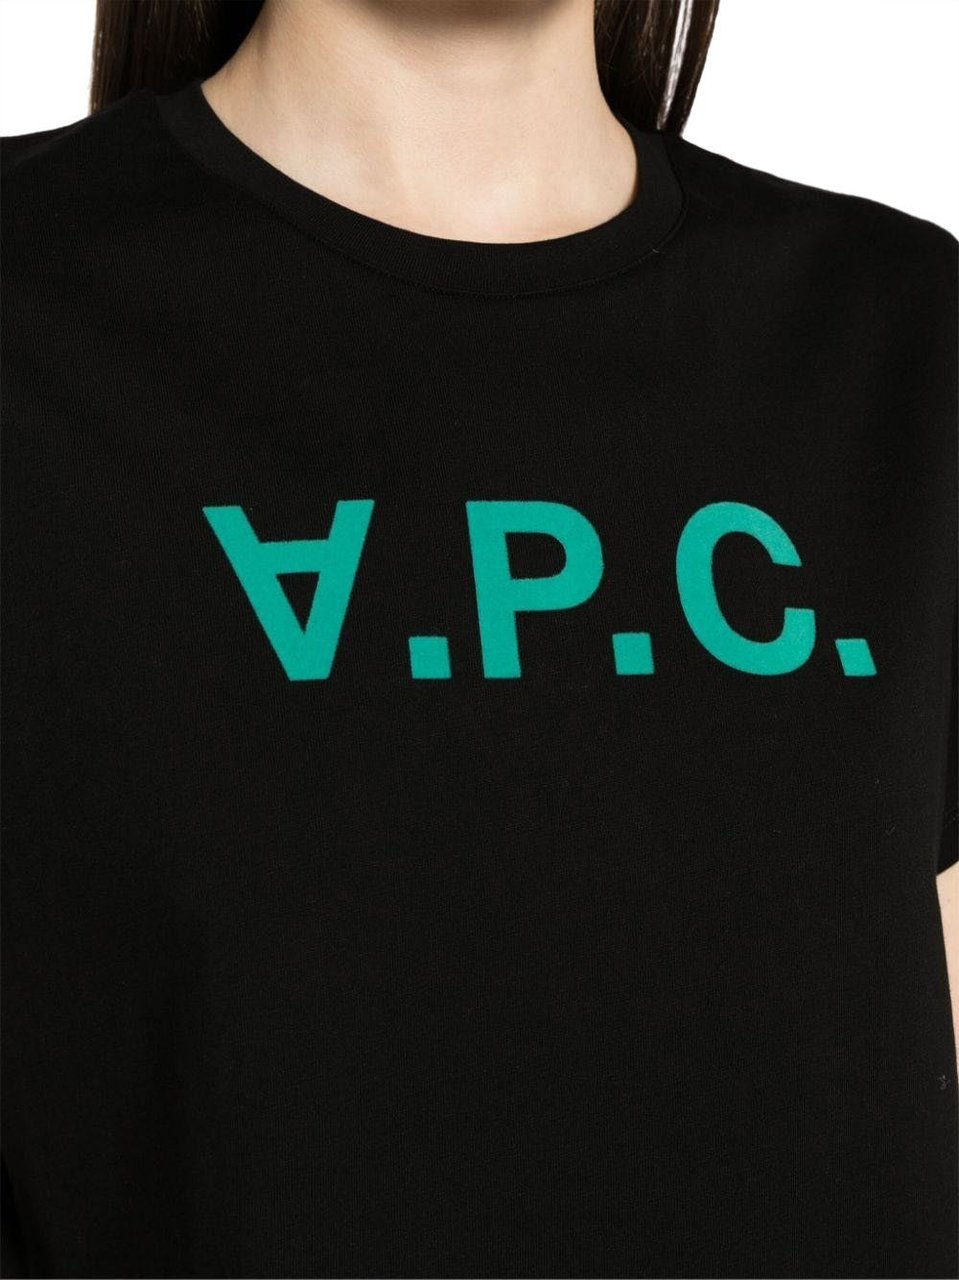 A.P.C. t-shirt vpc black Zwart